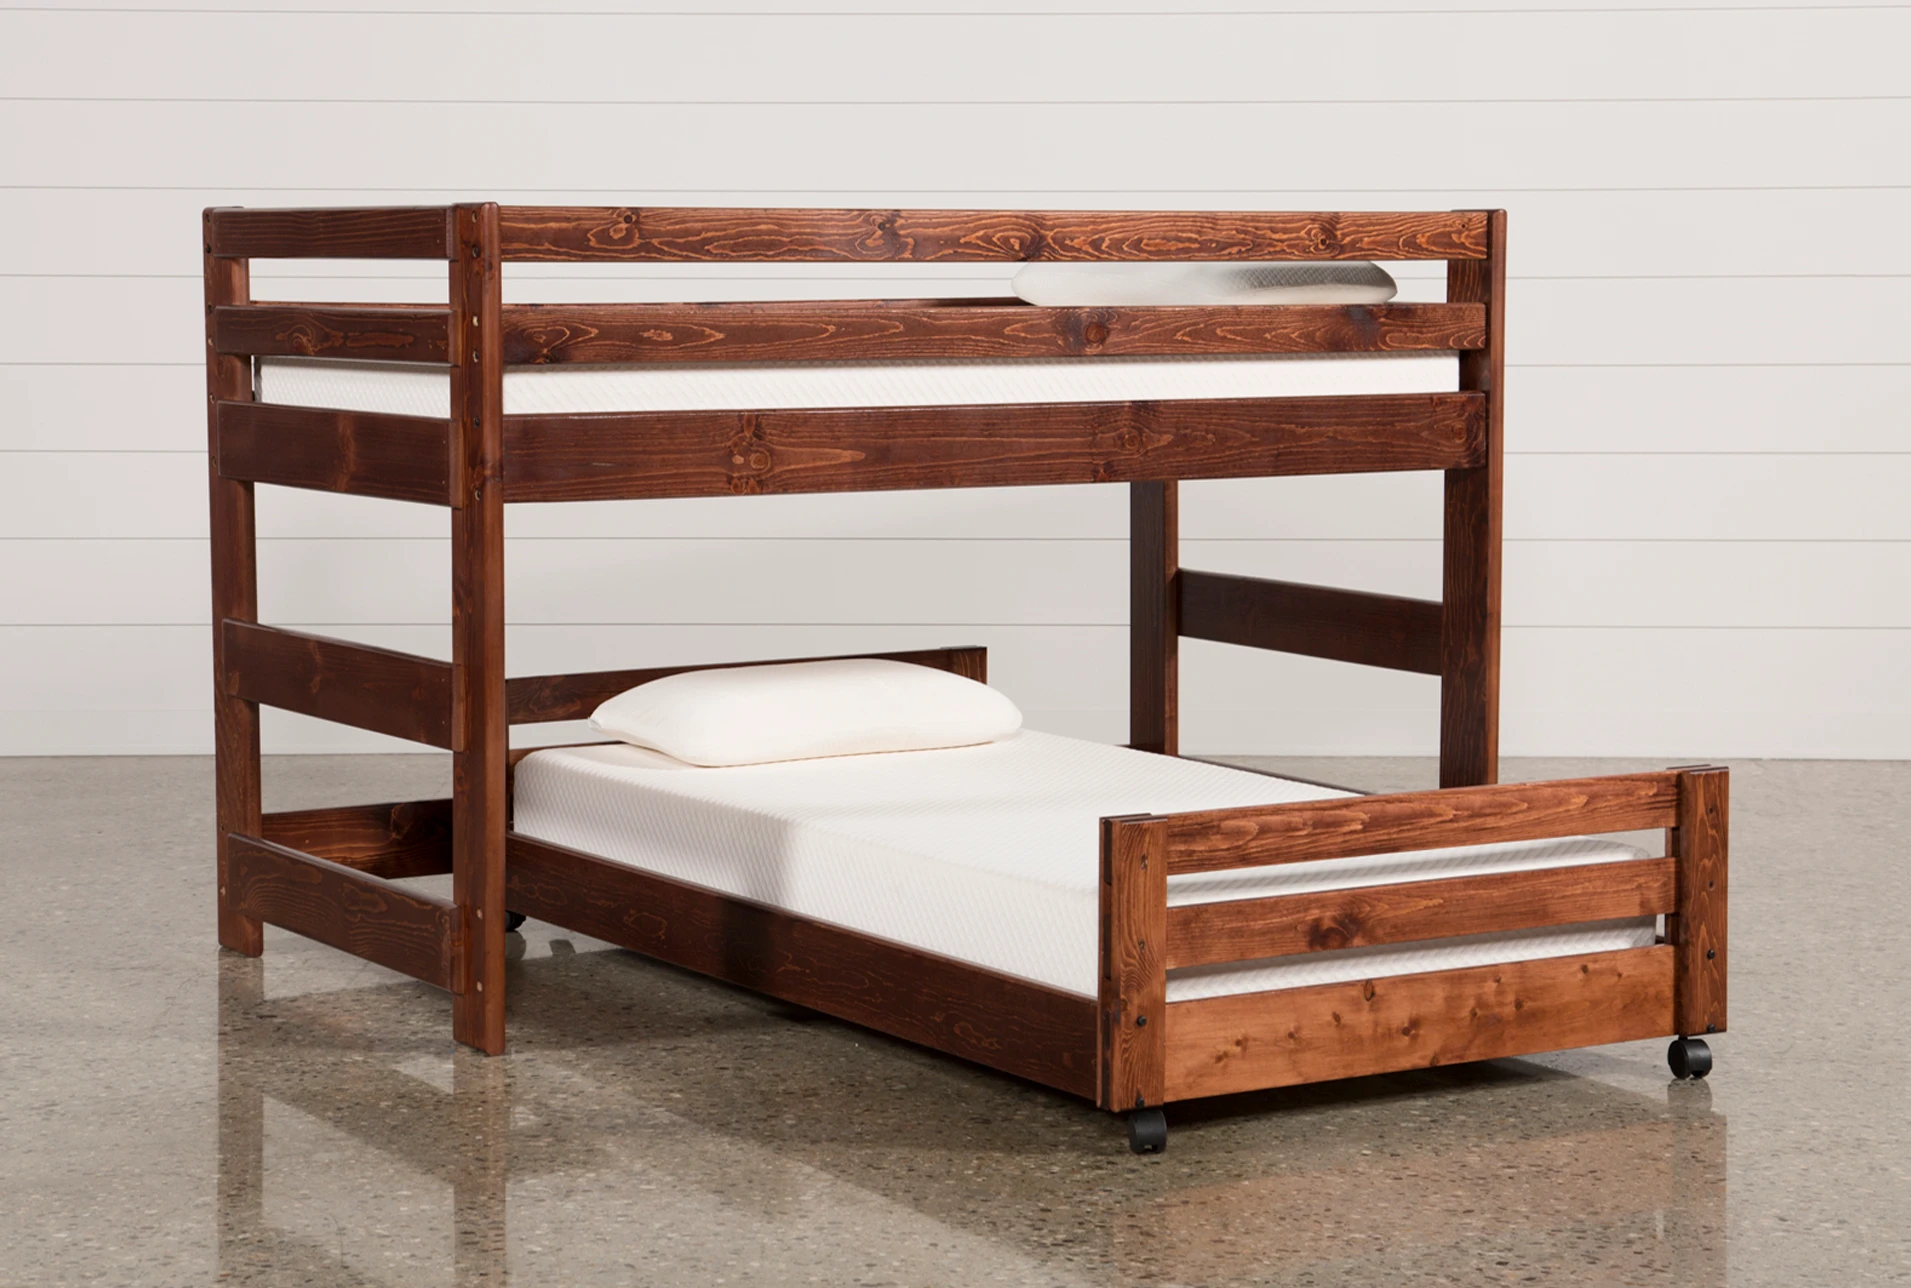 Zippered Bedding for Loft & Bunk Beds 